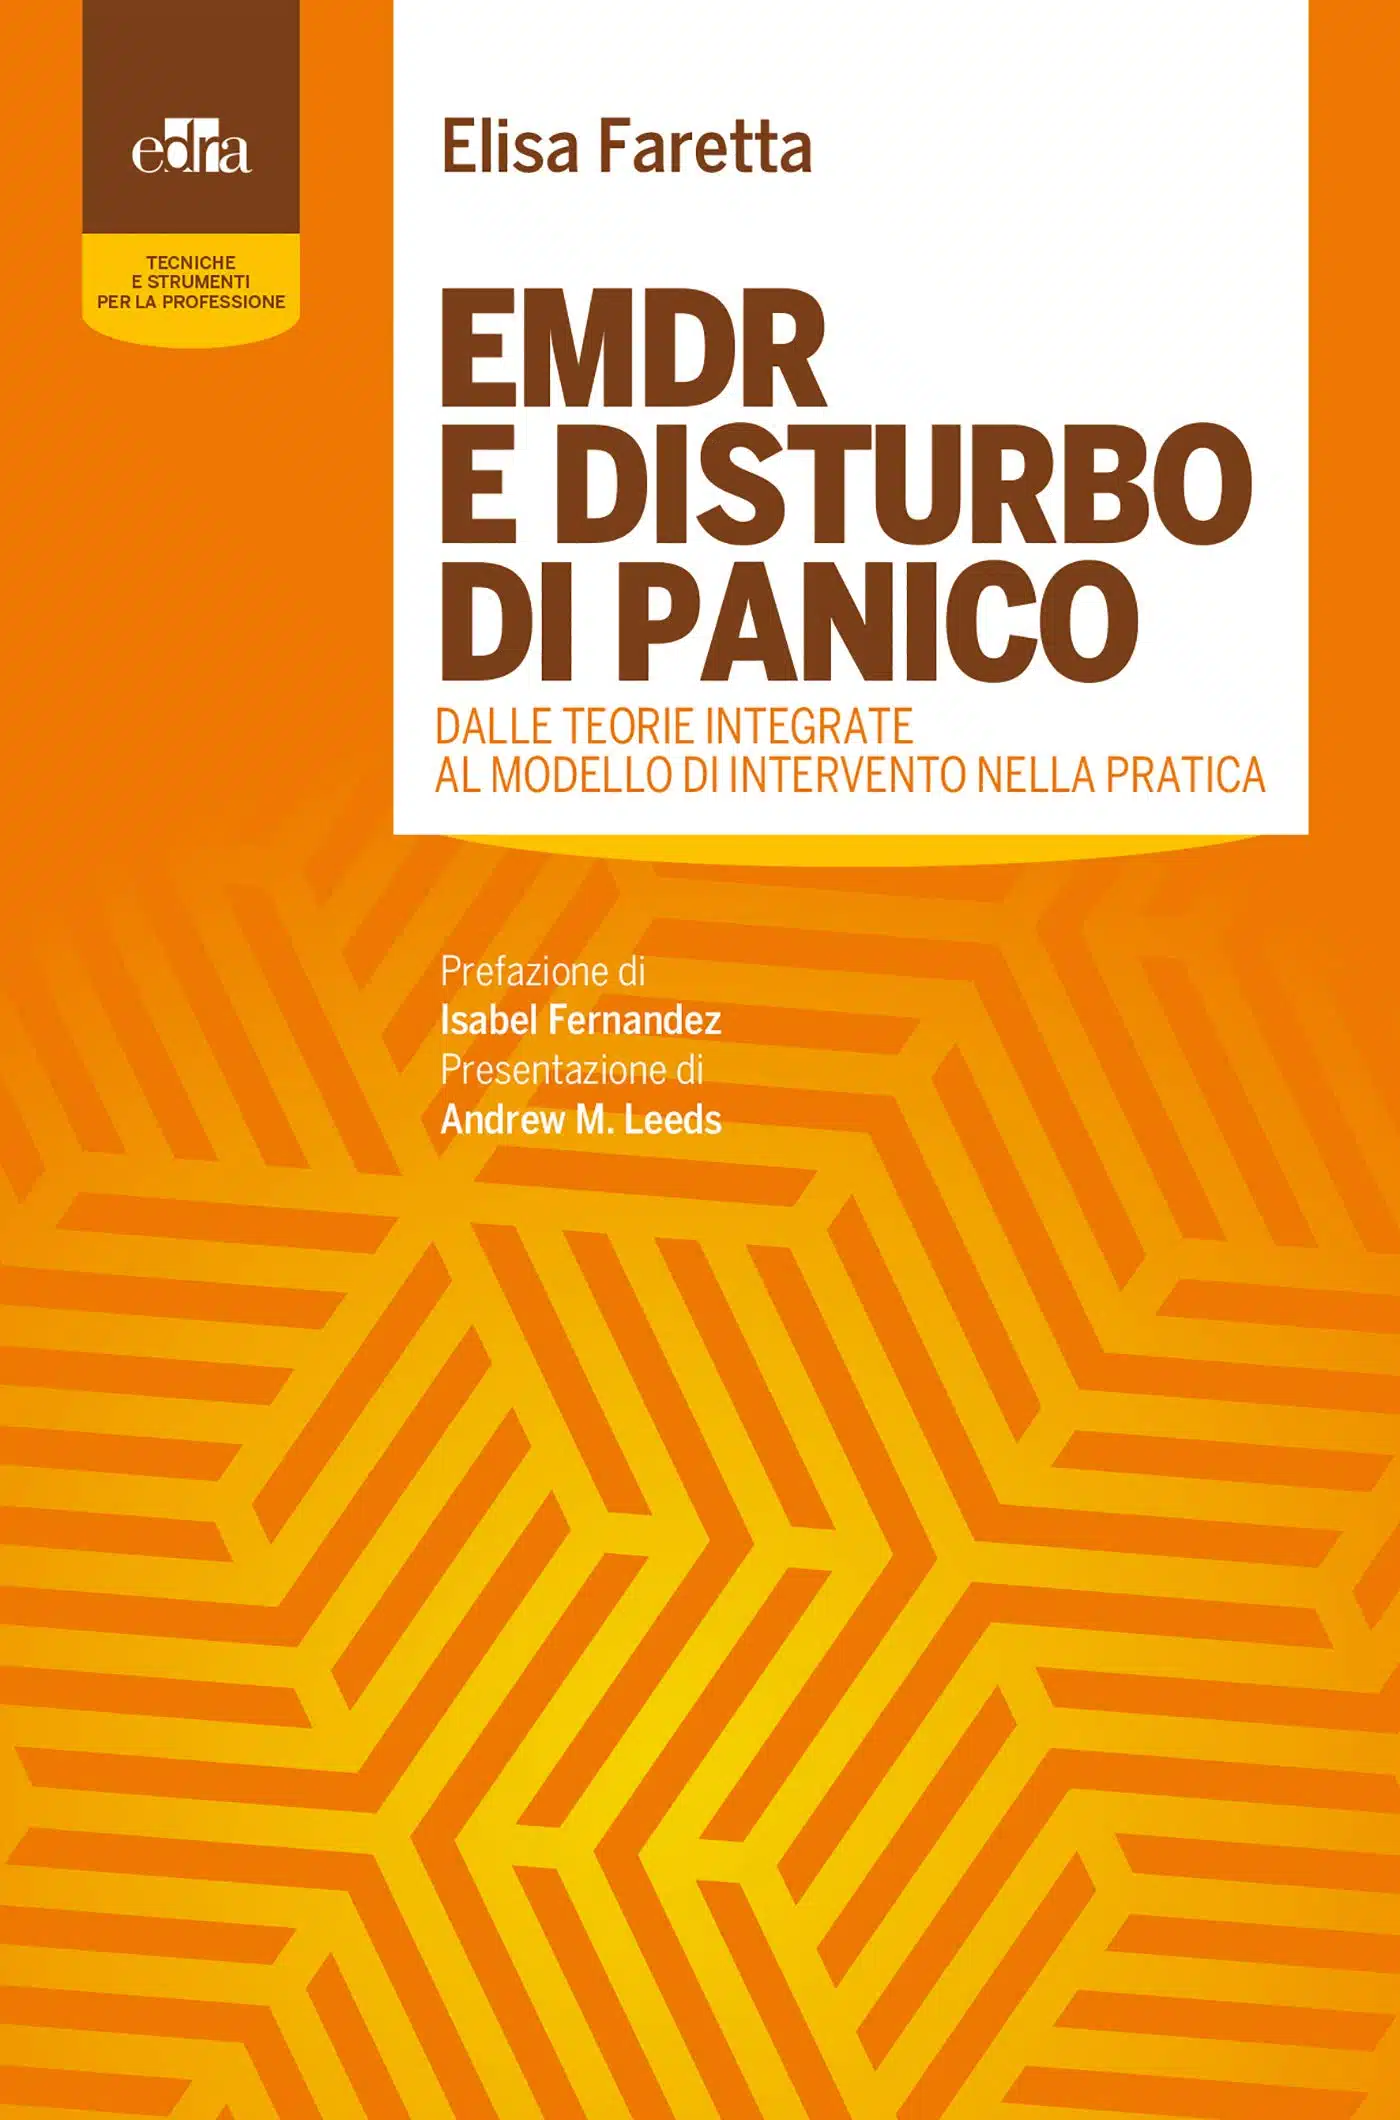 EMDR e disturbo di panico 2018 di Elisa Faretta Recensione del libro